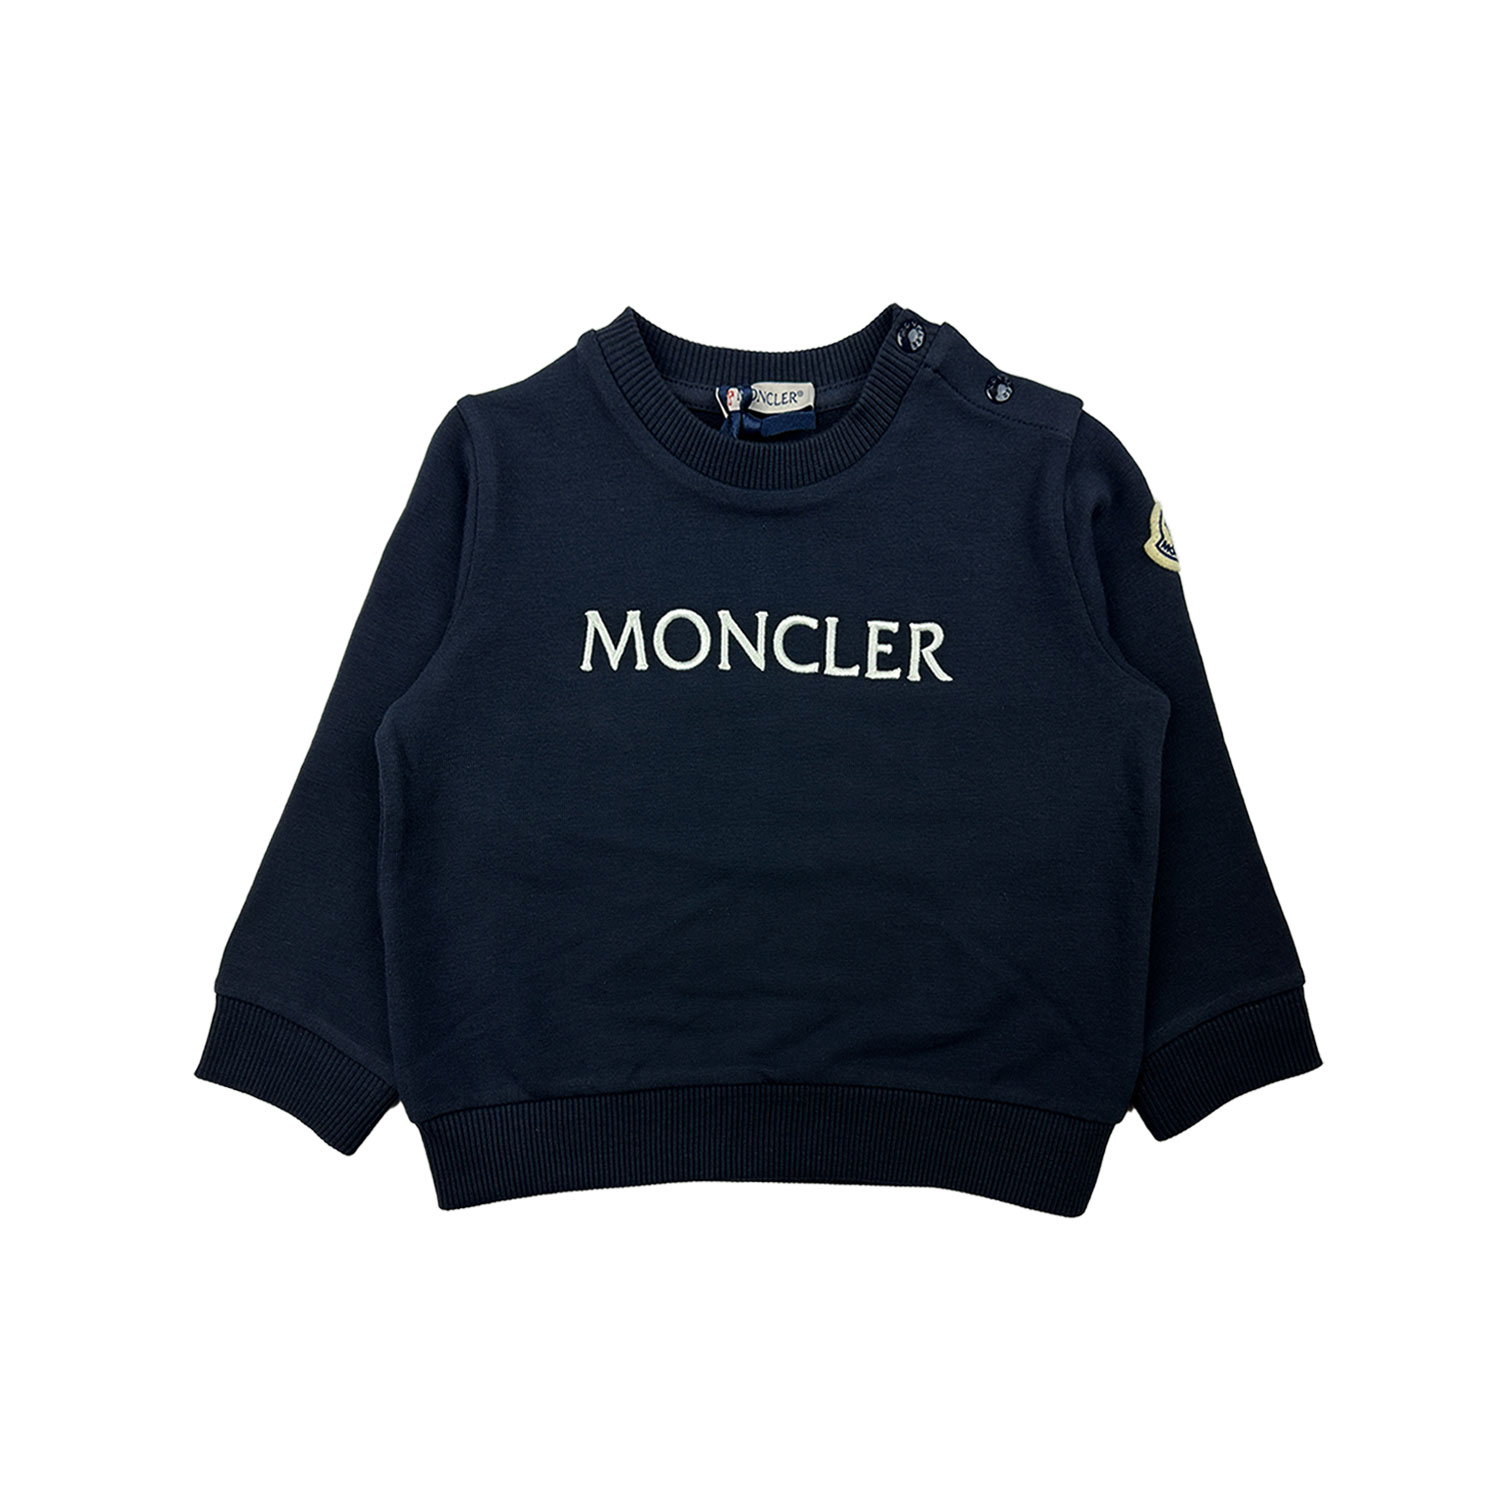 moncler-sweater-klein-dblauw